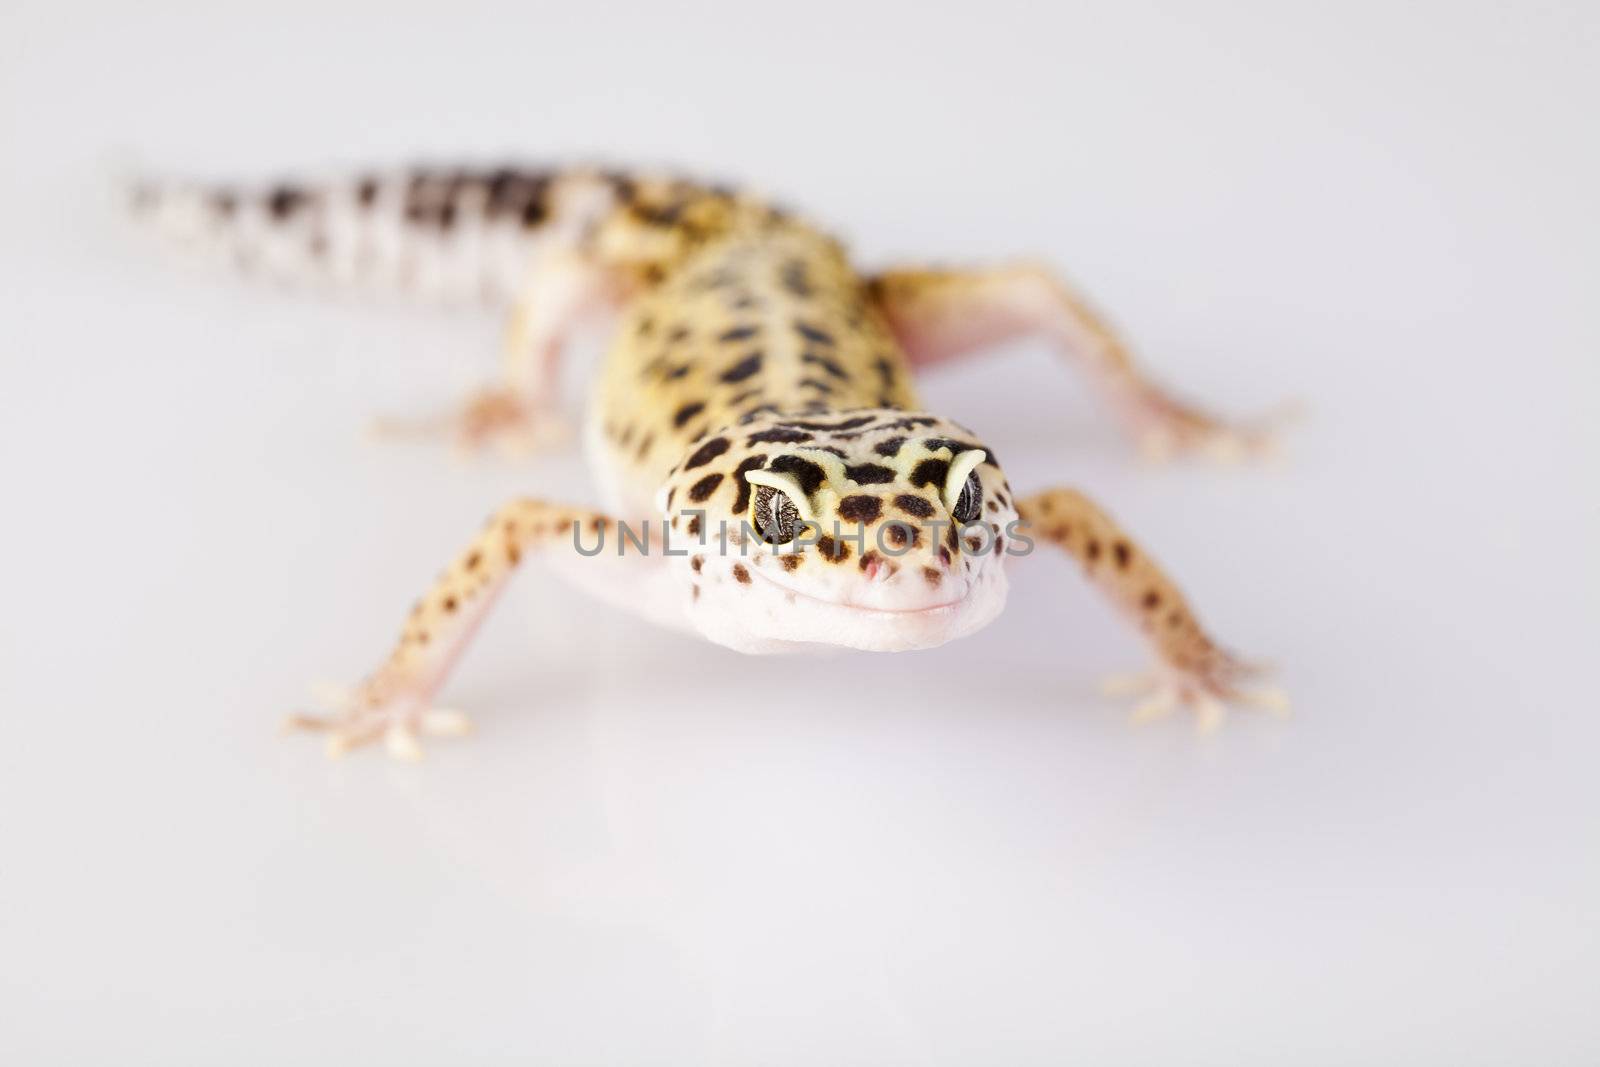 Gecko  by JanPietruszka